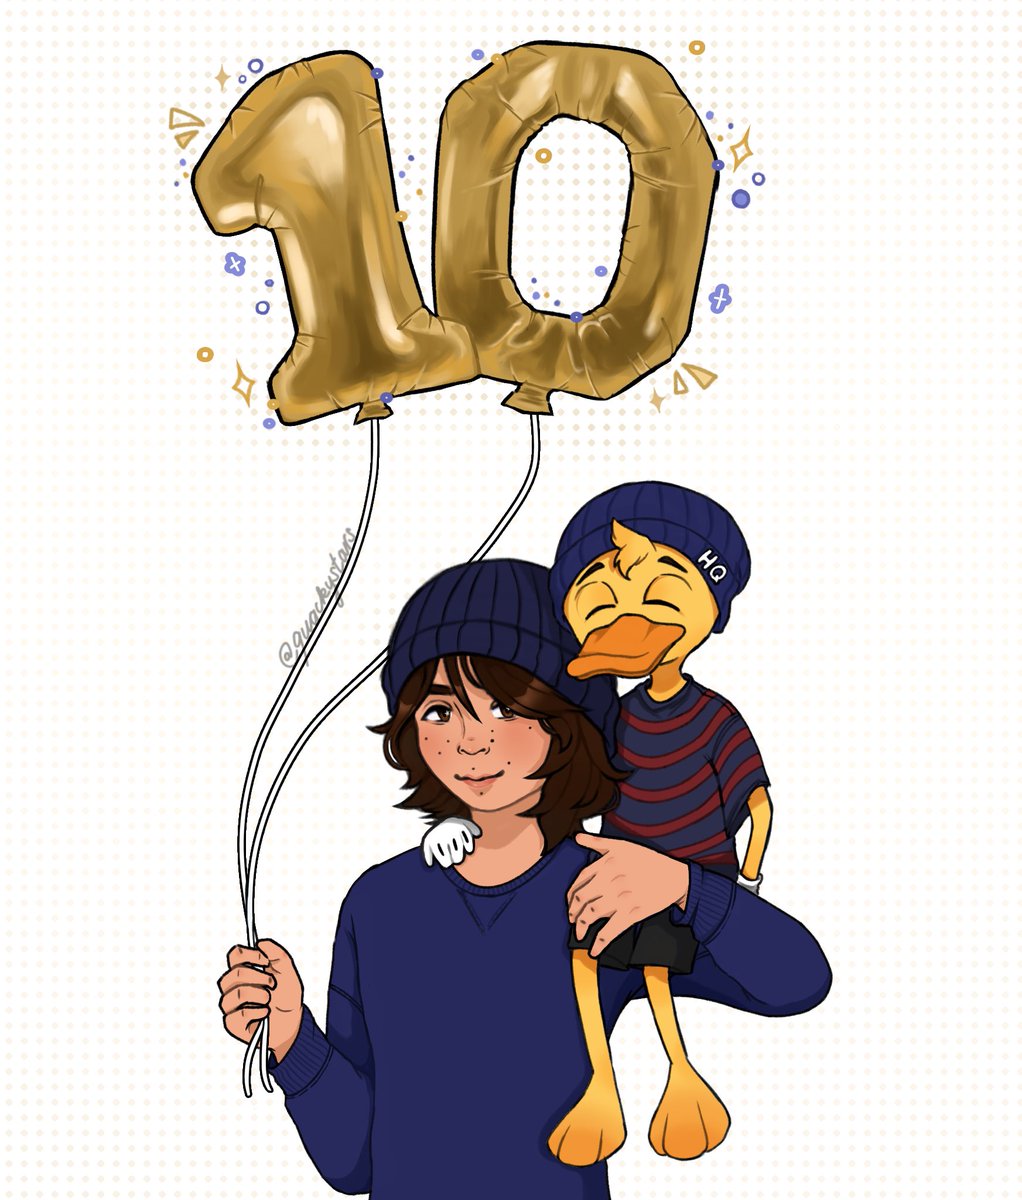 ✨ HAPPY 10 YEARS QUACKITY 💙🐥

#10thQuackiversary #10Quackiversario
#quackityfanart